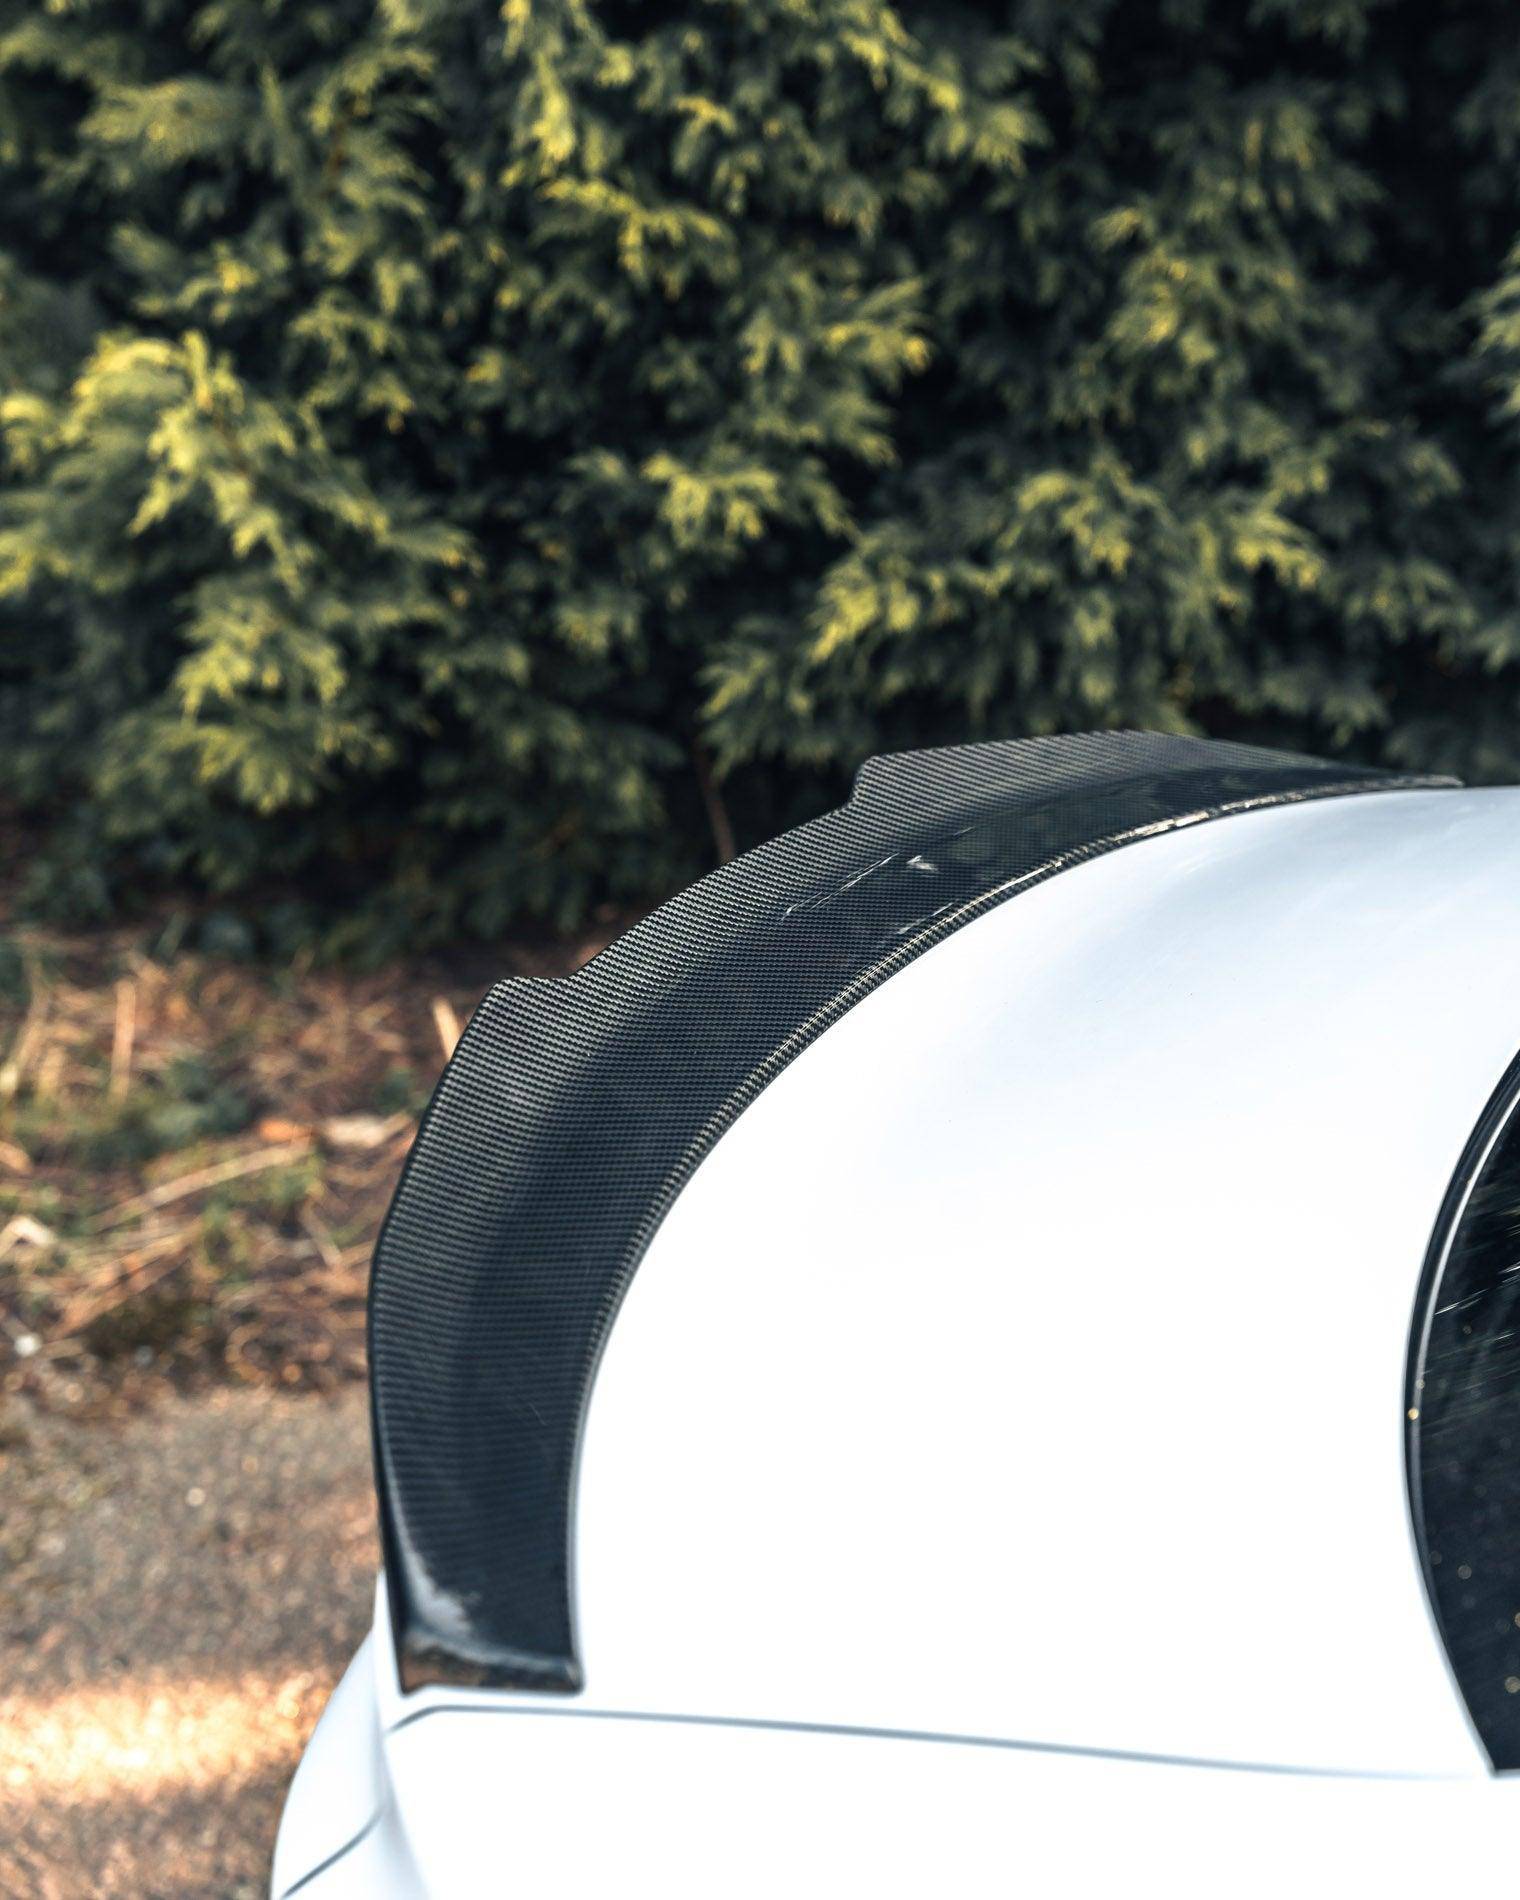 TRE Pre-preg Carbon Fibre Ducktail Rear Spoiler for Audi A3, S3 & RS3 (2021+, 8Y)